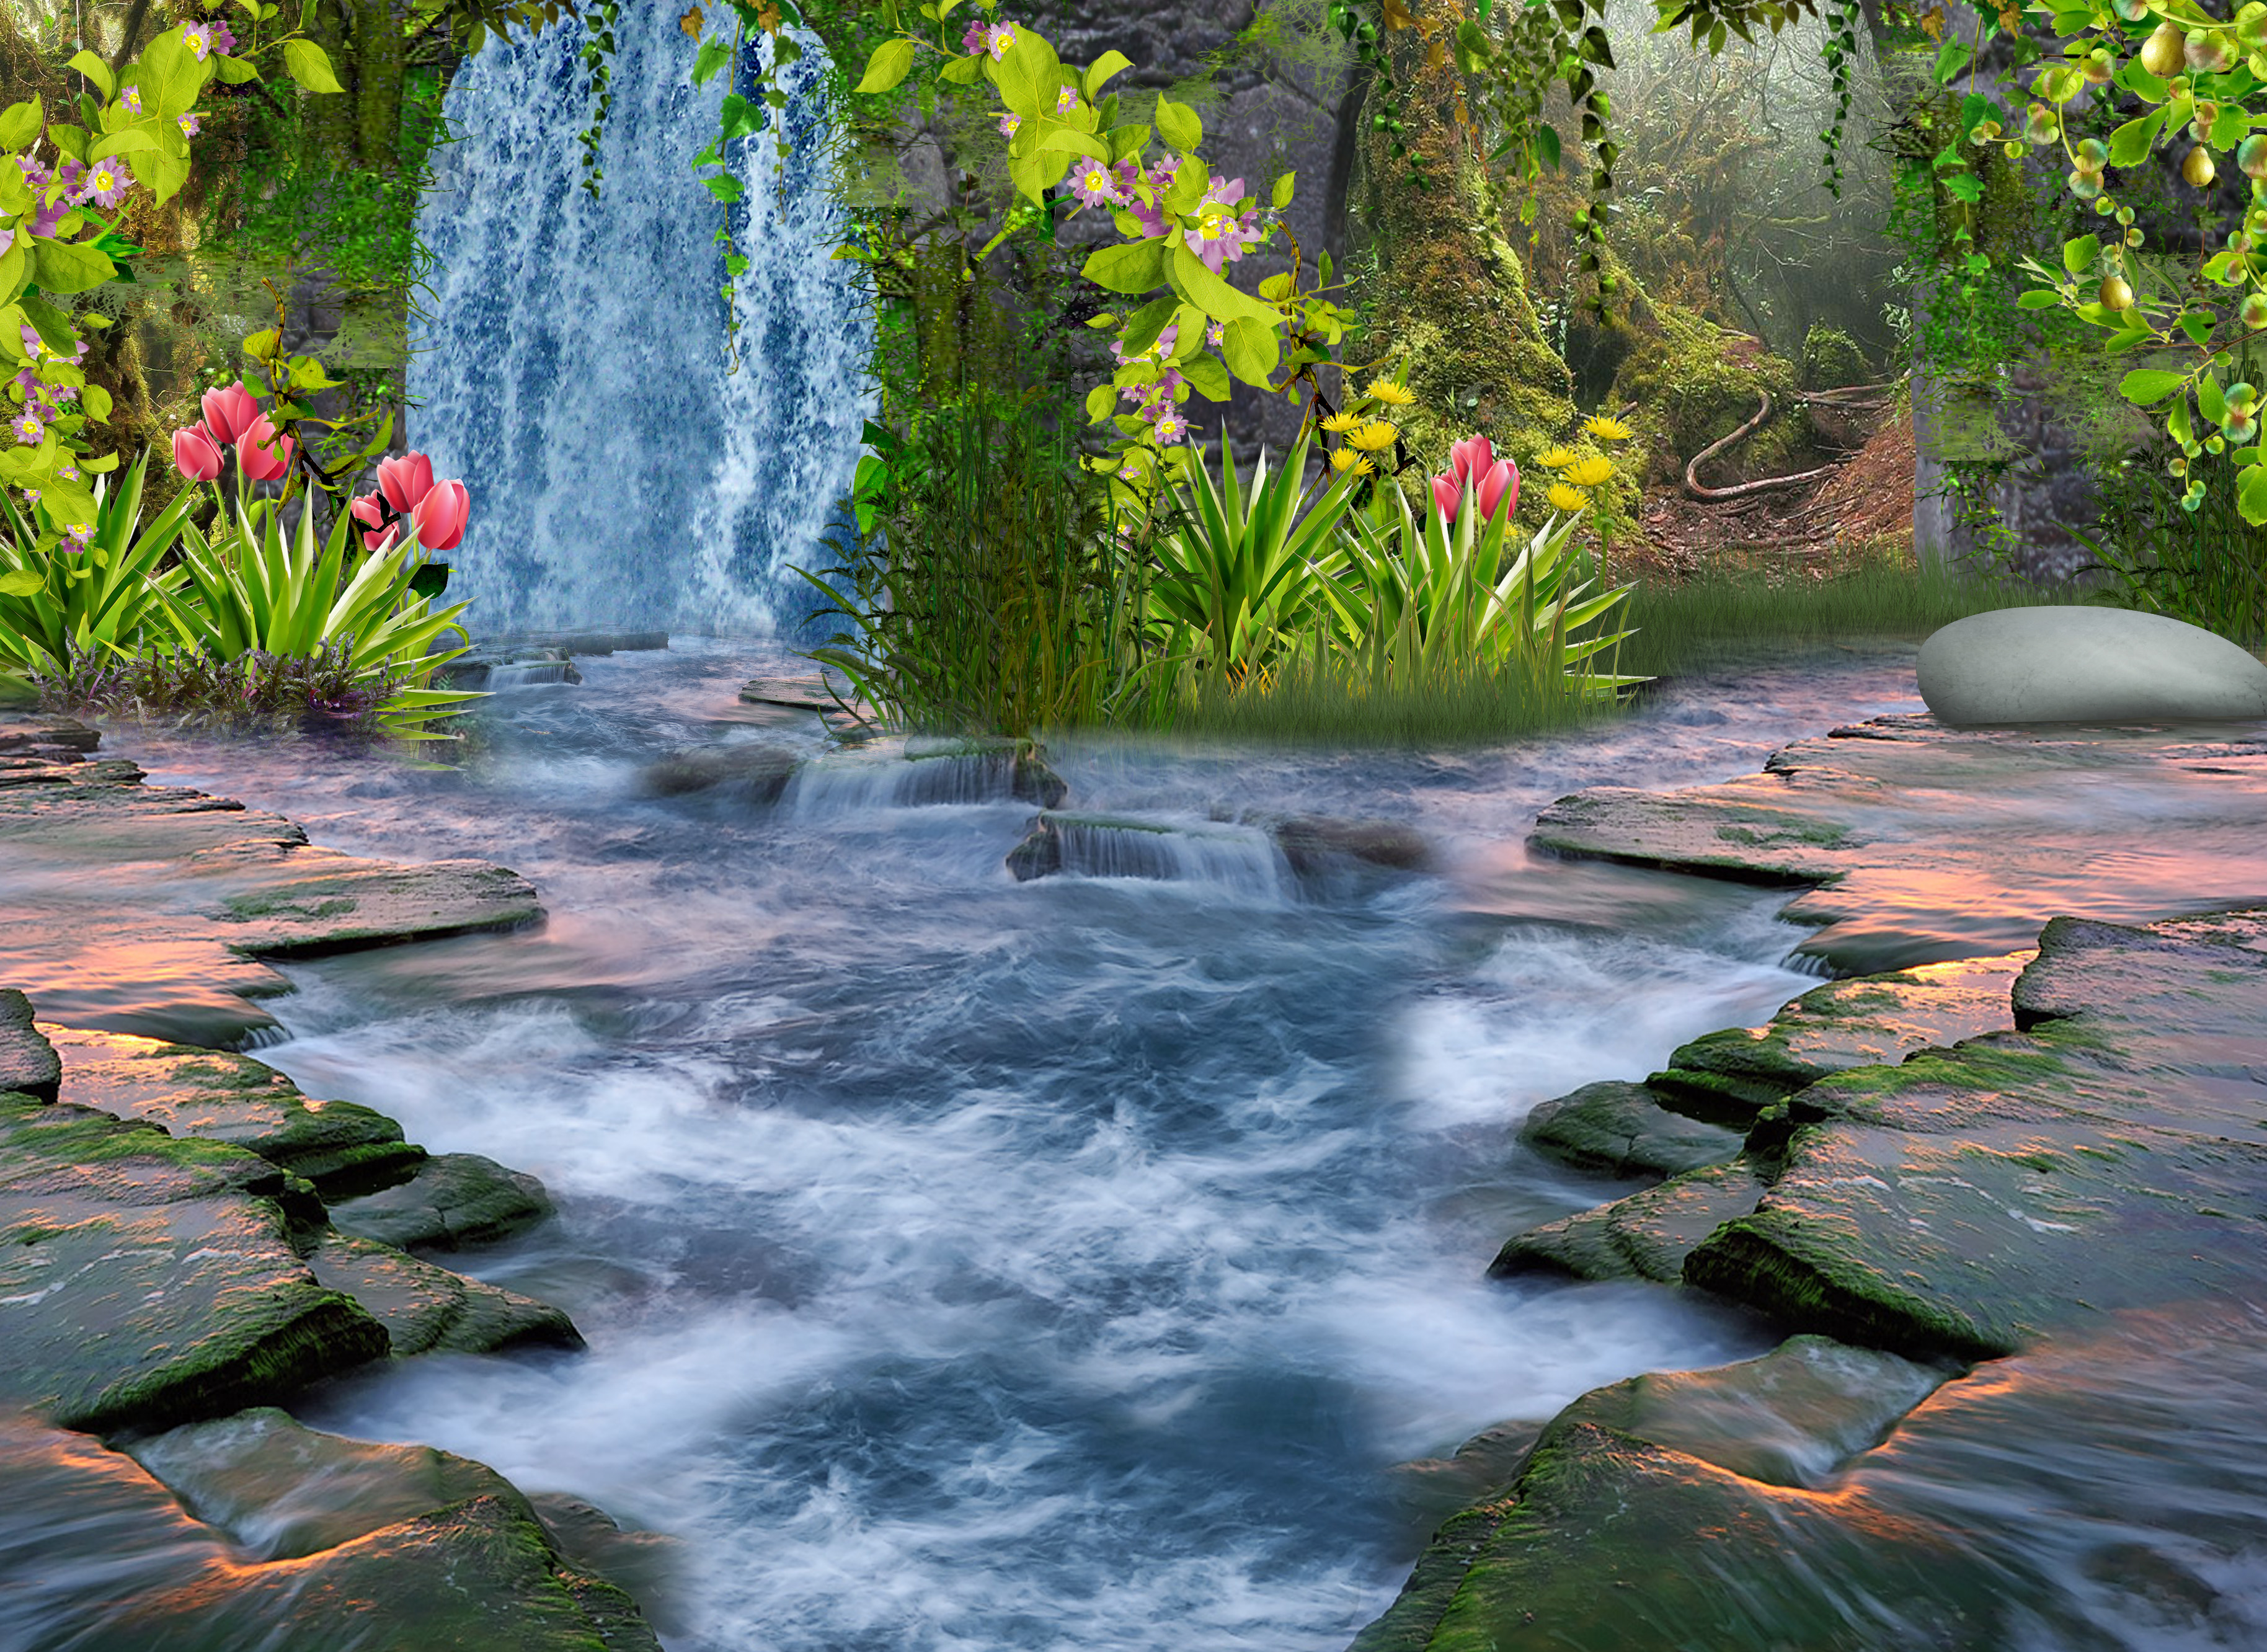 Cascad. Красивые водопады. Цветы на фоне водопада. Пейзаж водопад. Ручей водопад.